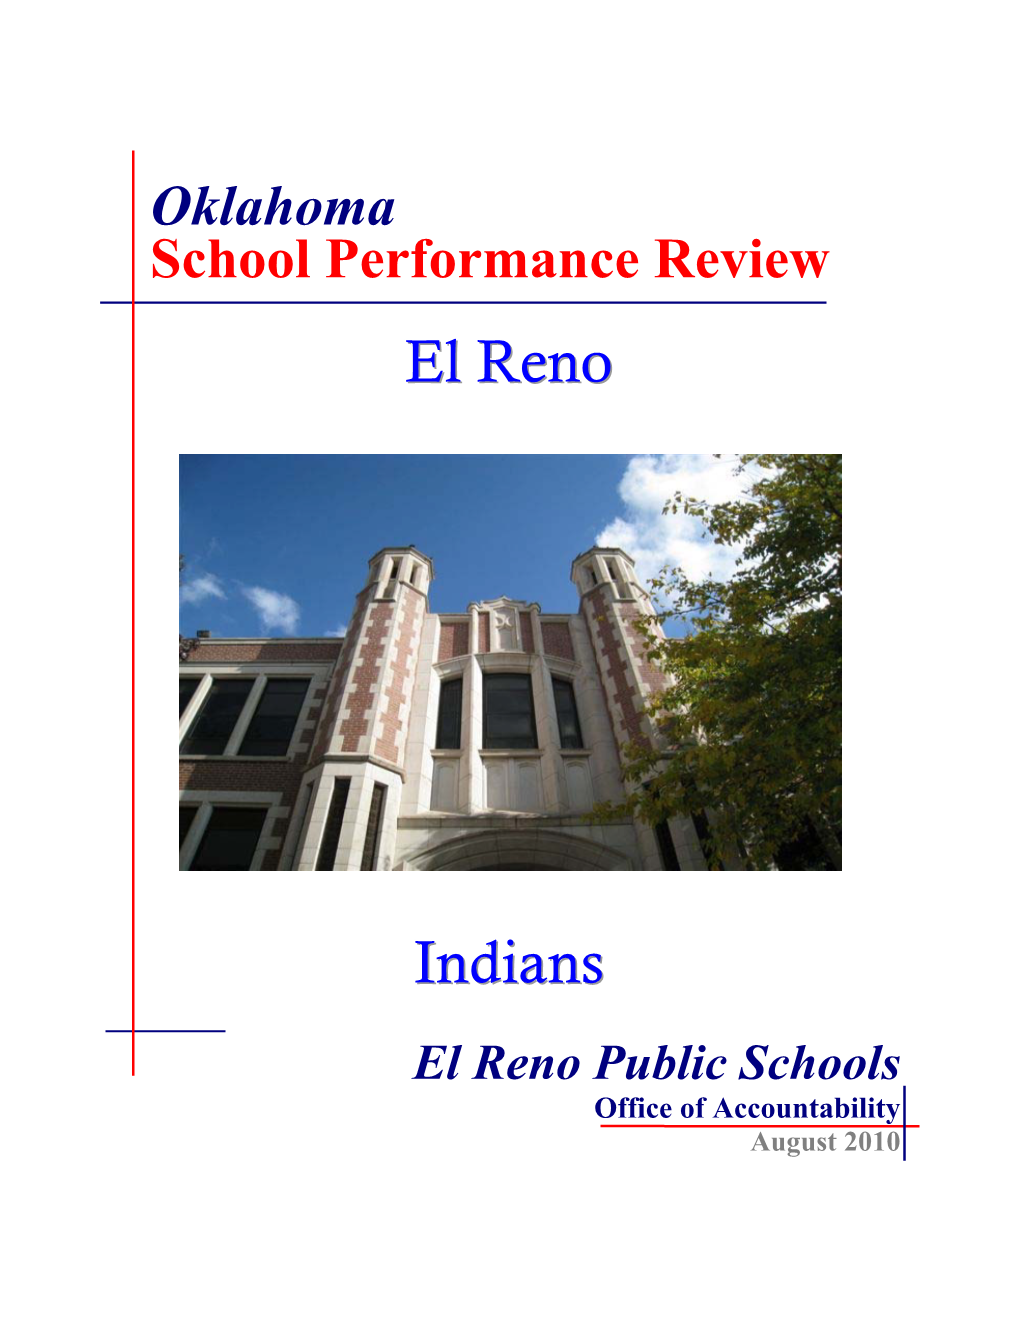 El Reno Public Schools Office of Accountability August 2010